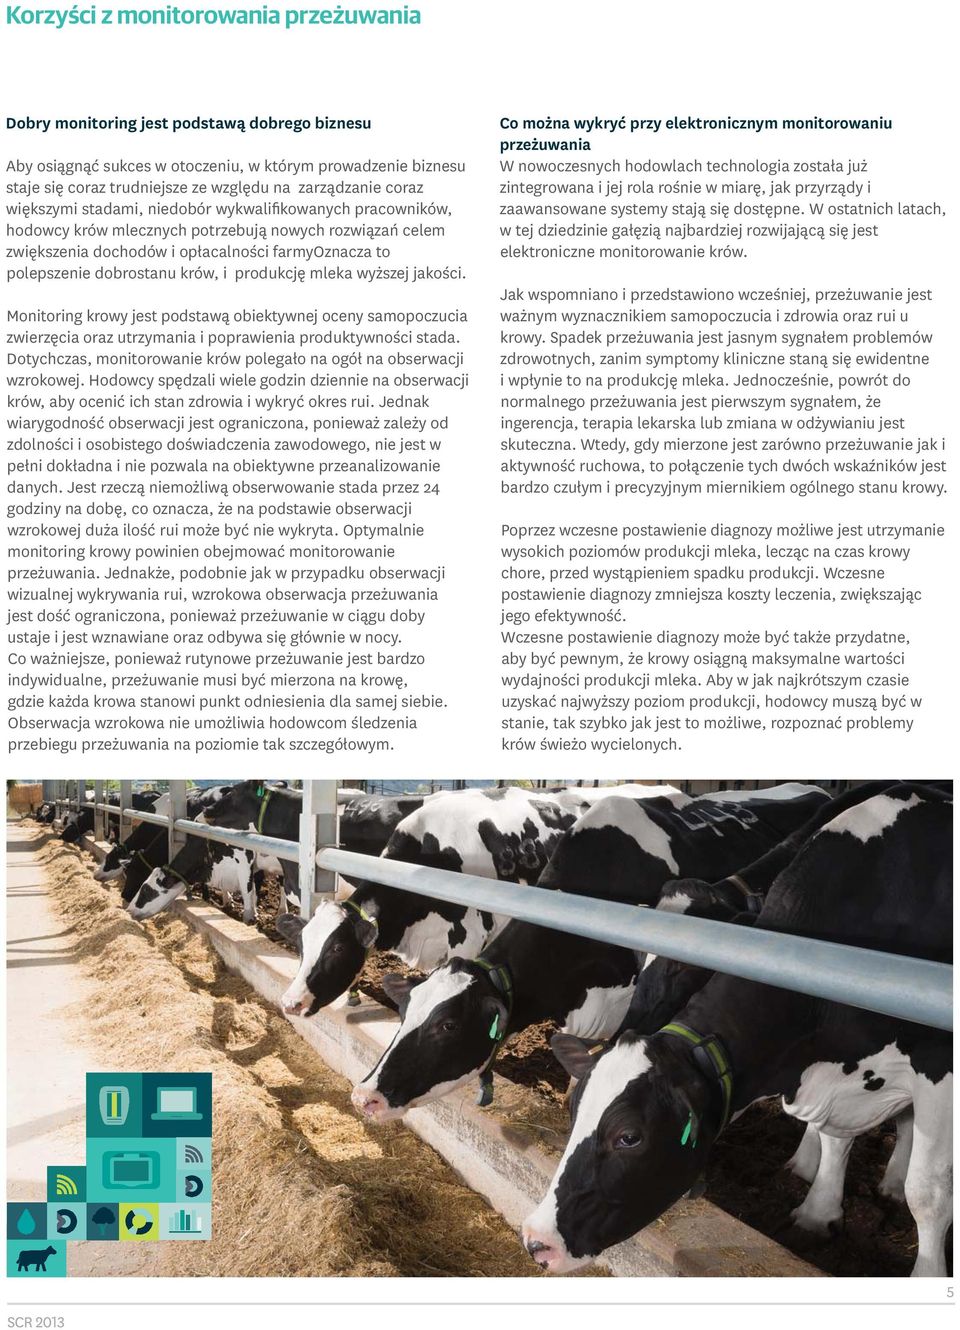 krów, i produkcję mleka wyższej jakości. Monitoring krowy jest podstawą obiektywnej oceny samopoczucia zwierzęcia oraz utrzymania i poprawienia produktywności stada.